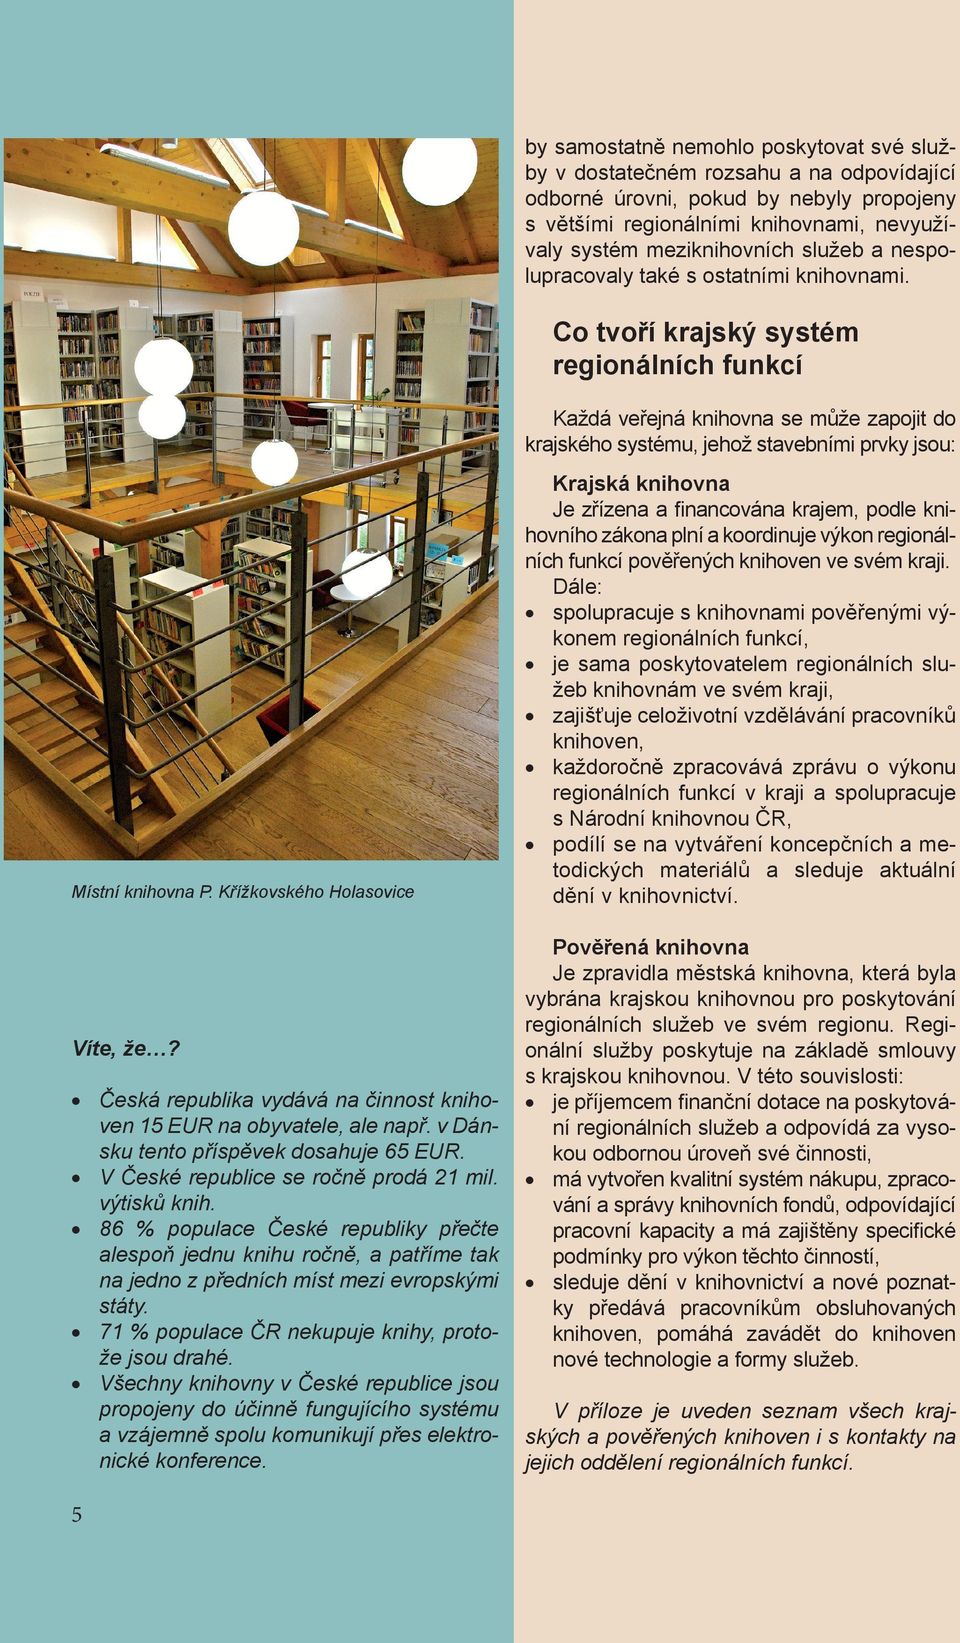 Co tvoří krajský systém regionálních funkcí Každá veřejná knihovna se může zapojit do krajského systému, jehož stavebními prvky jsou: Místní knihovna P. Křížkovského Holasovice Víte, že?